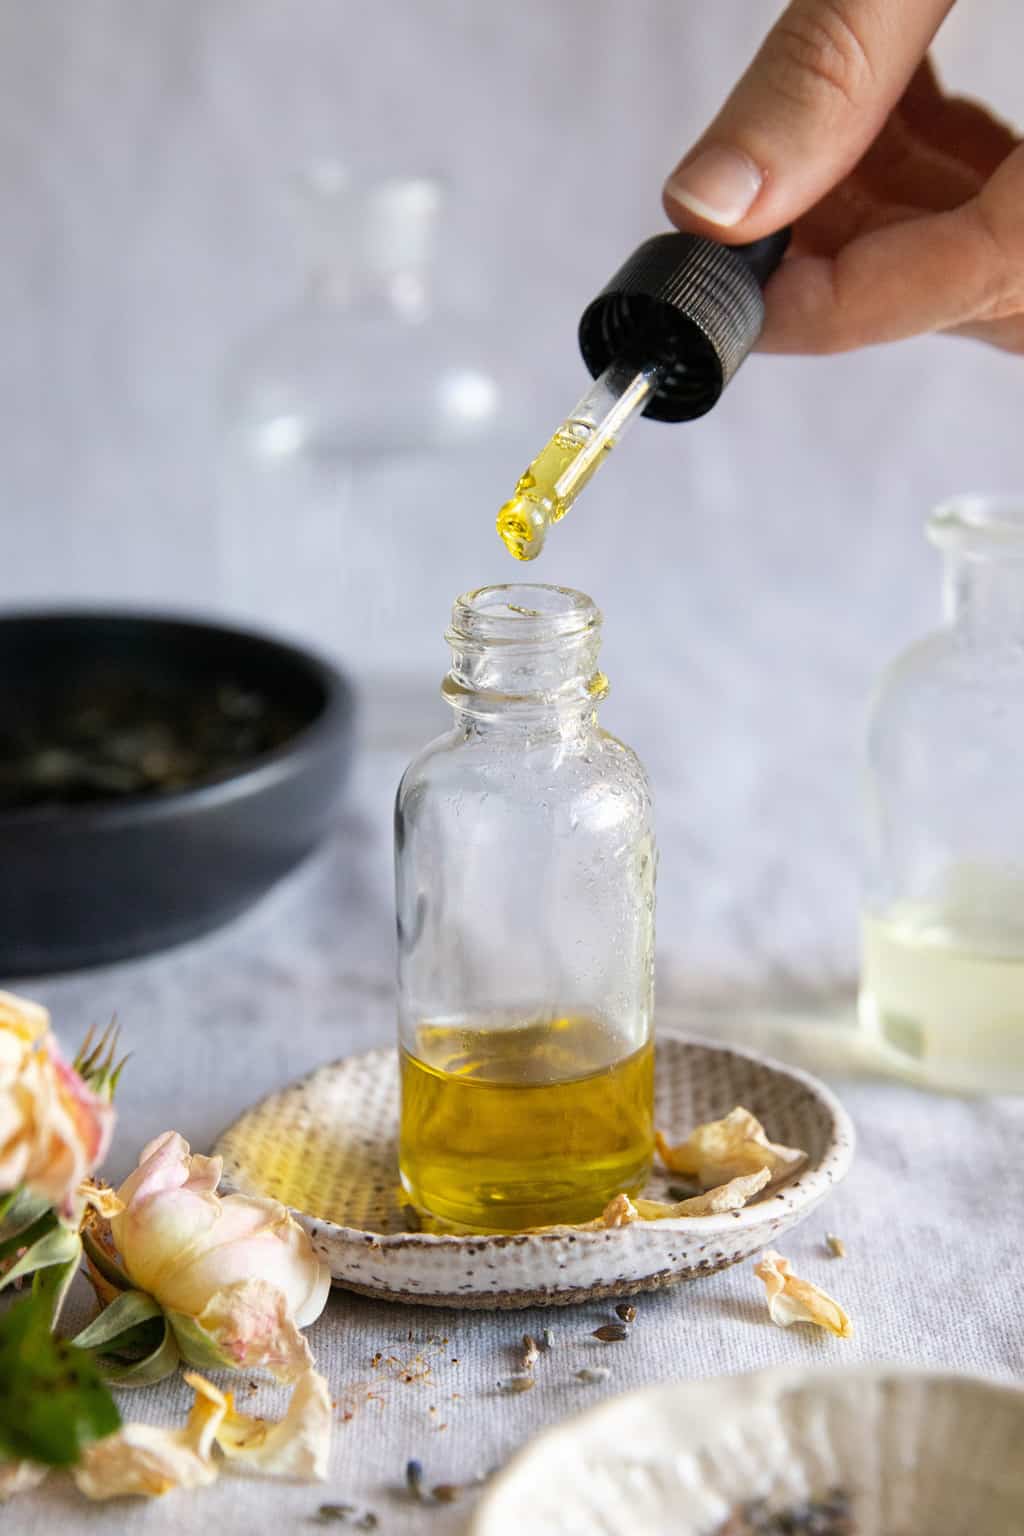 Adding essential oils for scars to a homemade face serum recipe